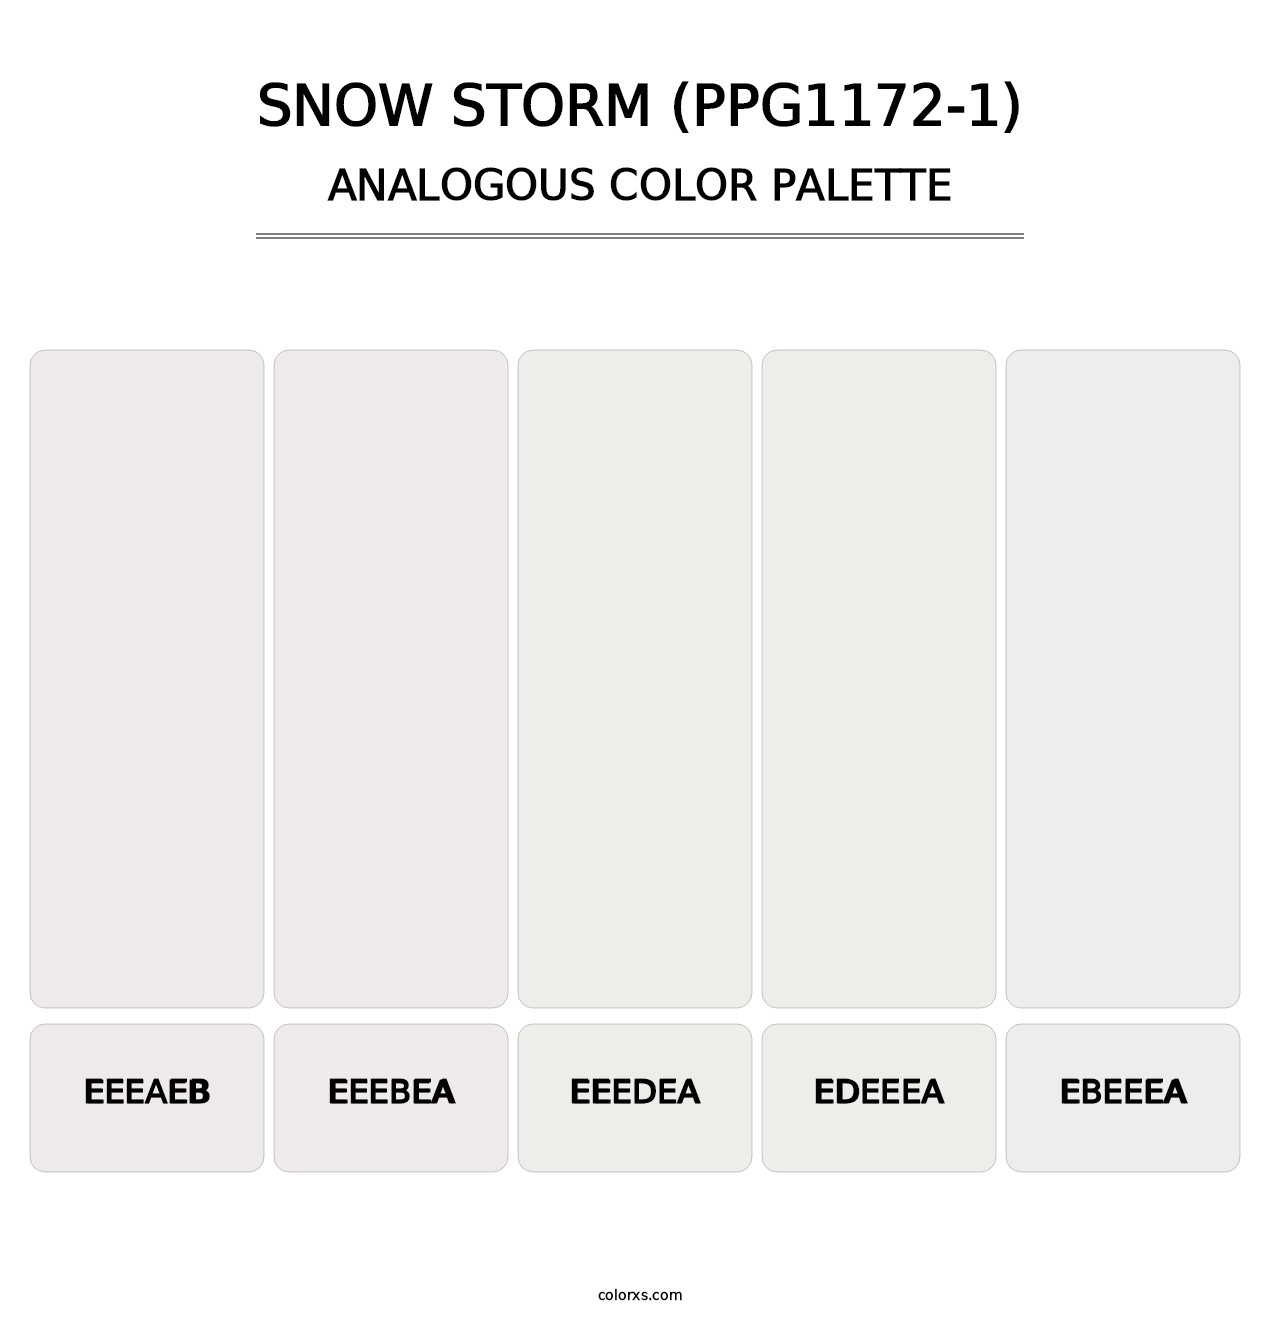 Snow Storm (PPG1172-1) - Analogous Color Palette